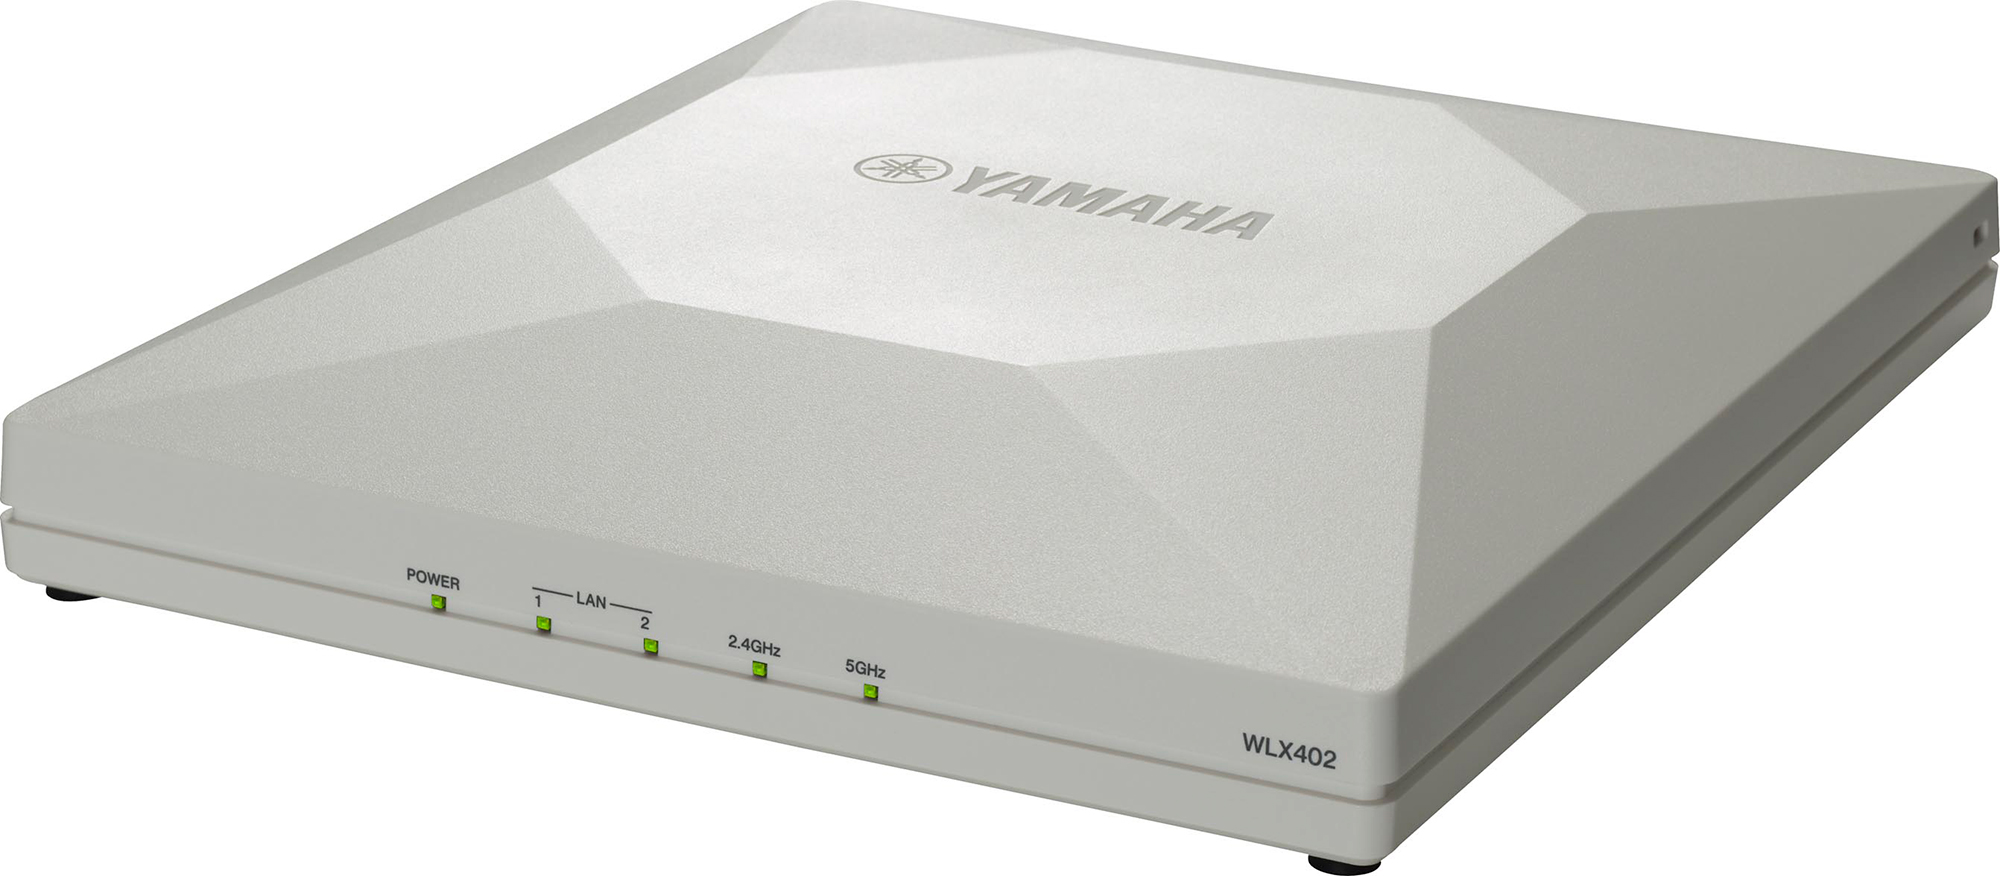 無線LANアクセスポイントシリーズのラインナップ拡充 IEEE 802.11ac